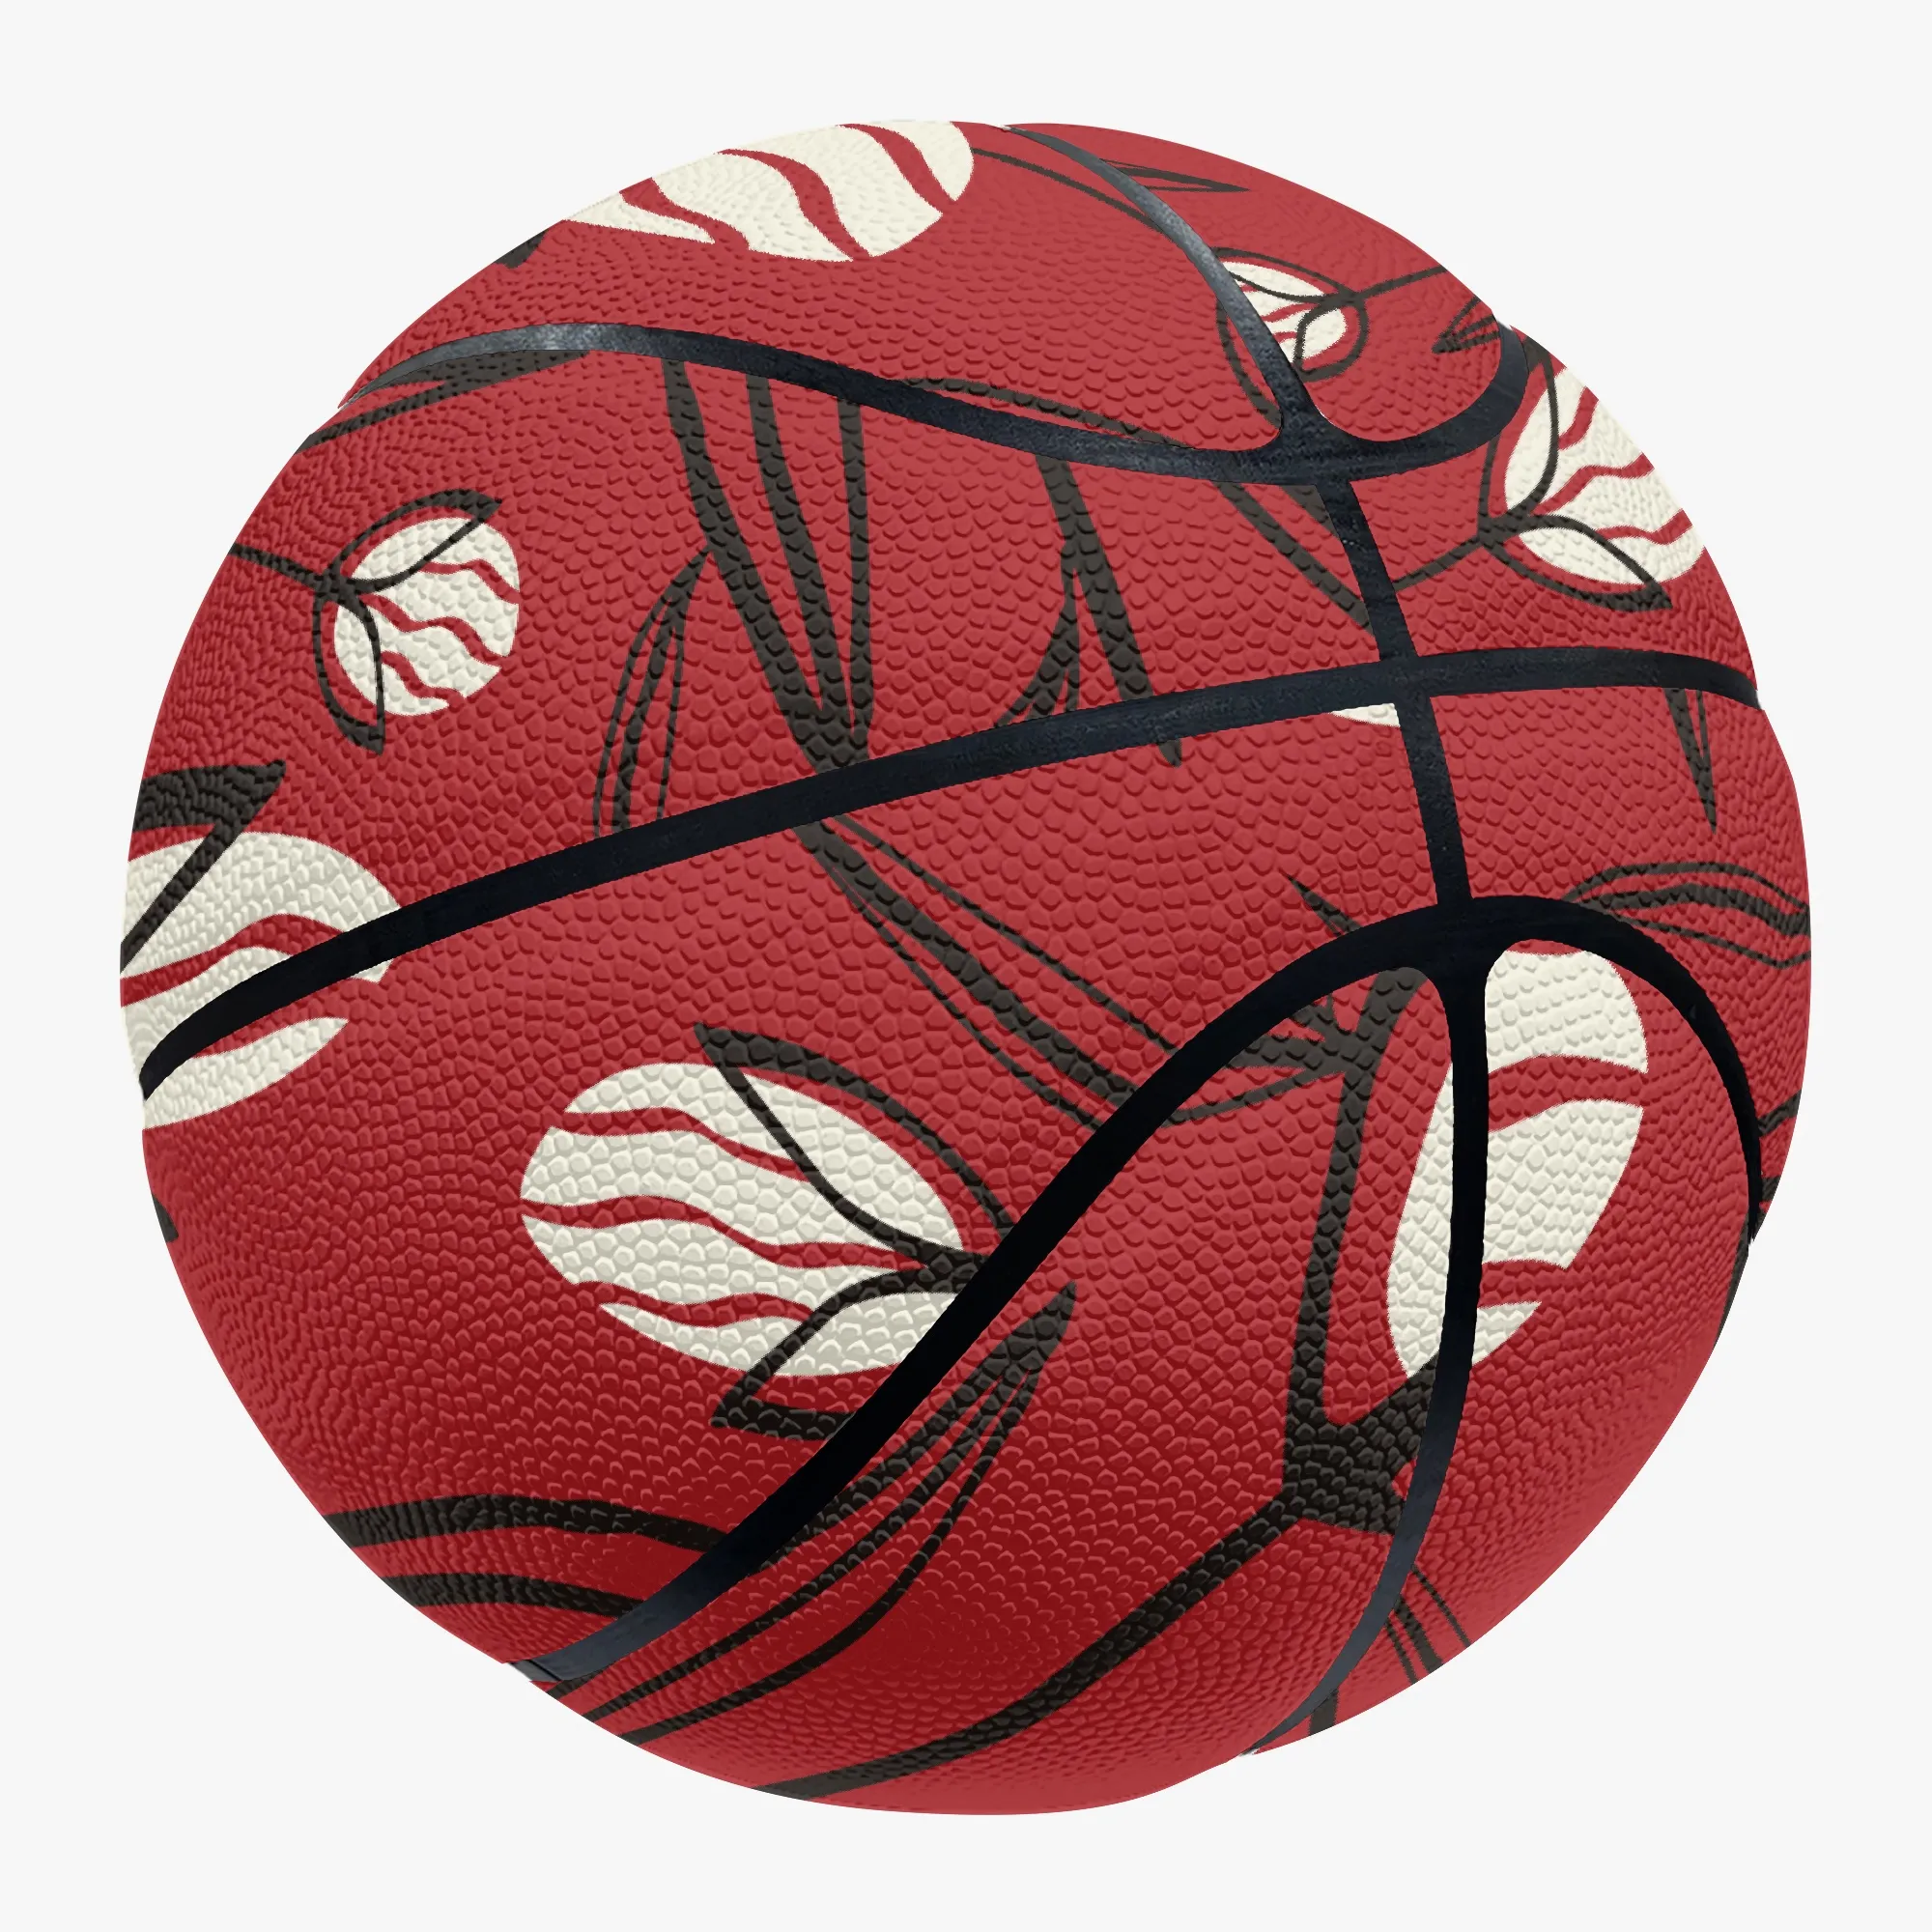 Basket-ball personnalisé bricolage basket-ball sports de plein air jeu de basket-ball équipement de formation d'équipe chaude ventes directes d'usine 122887